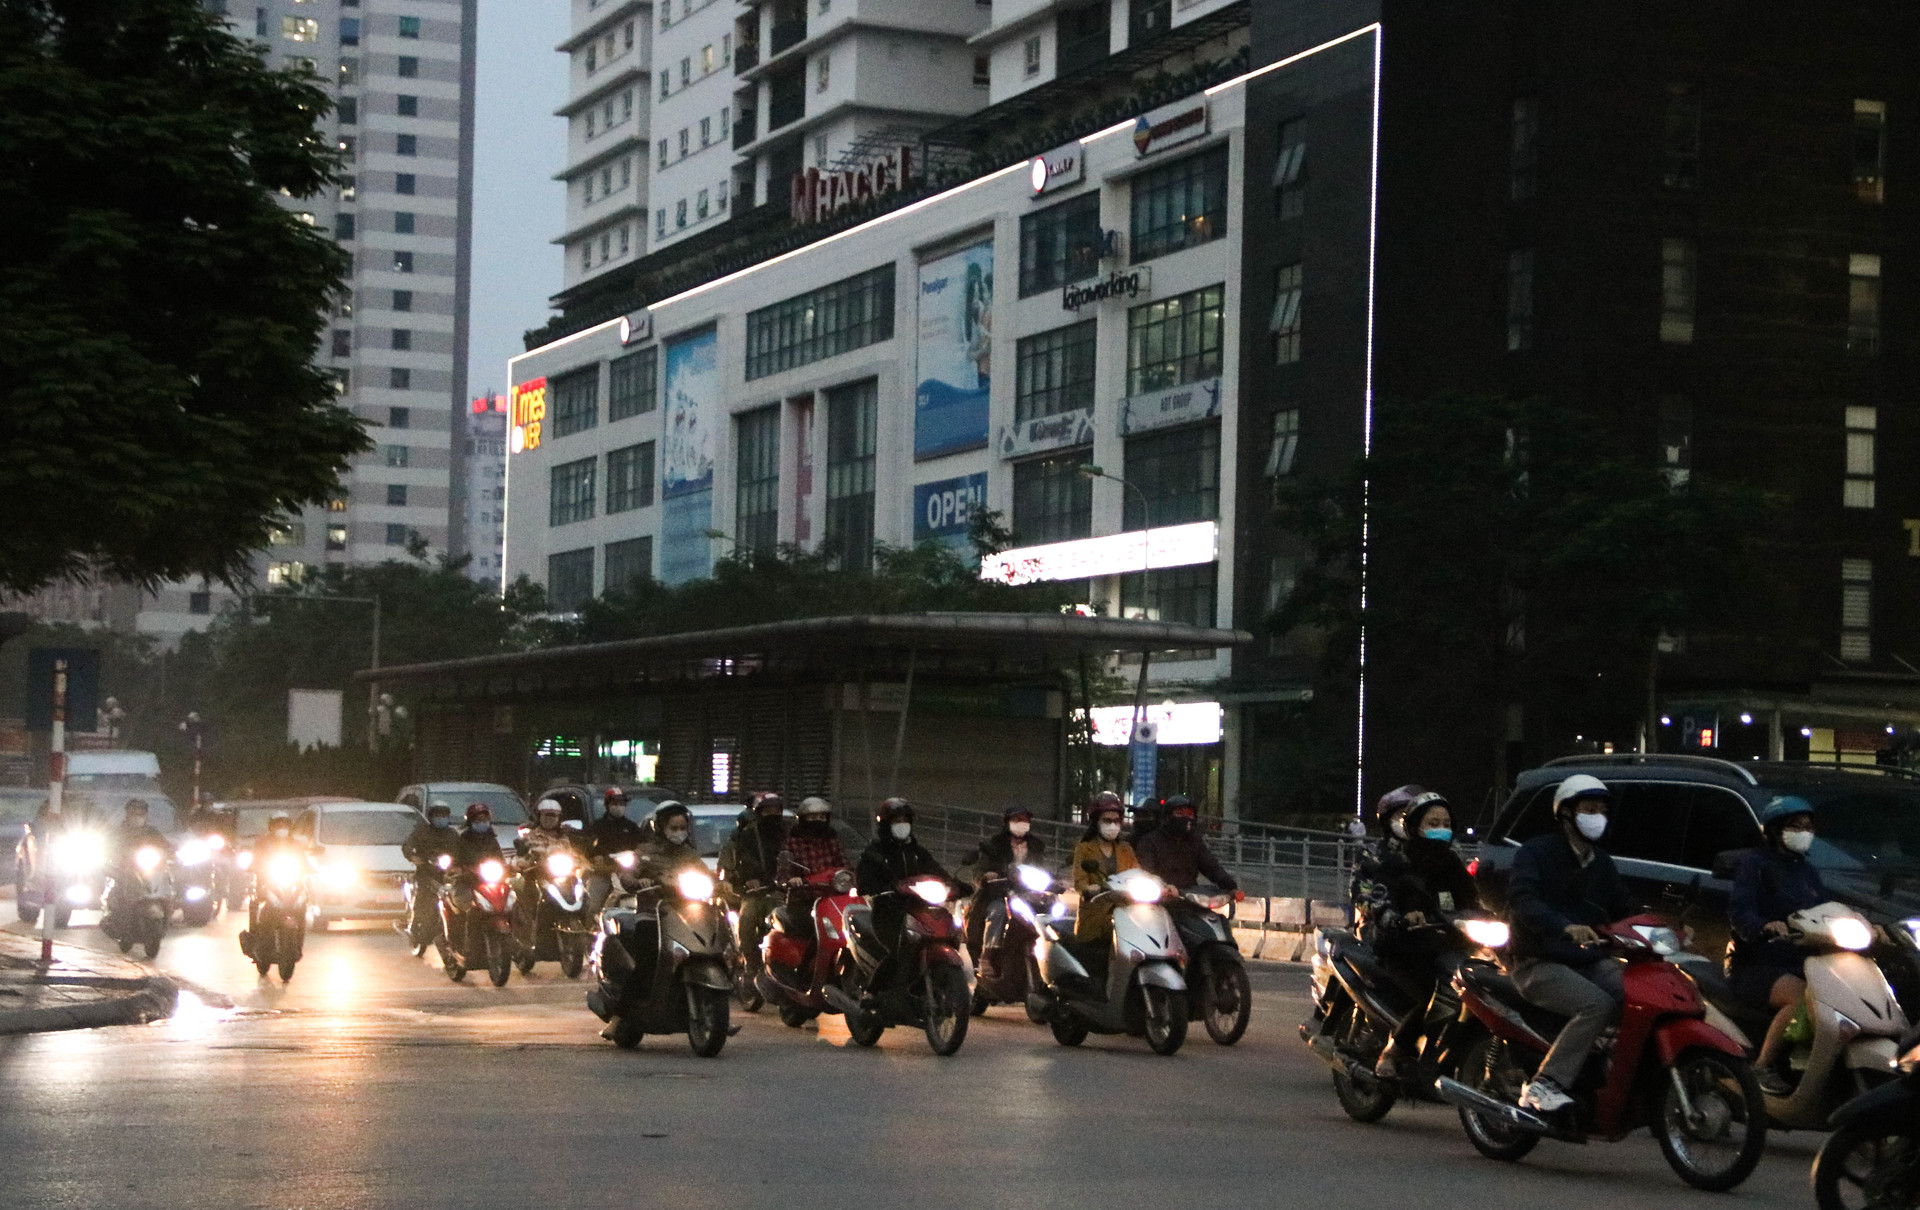 Chùm ảnh: Các tụ điểm công cộng tại Hà Nội dần trở nên đông đúc sau một tuần thực hiện cách ly xã hội - Ảnh 14.